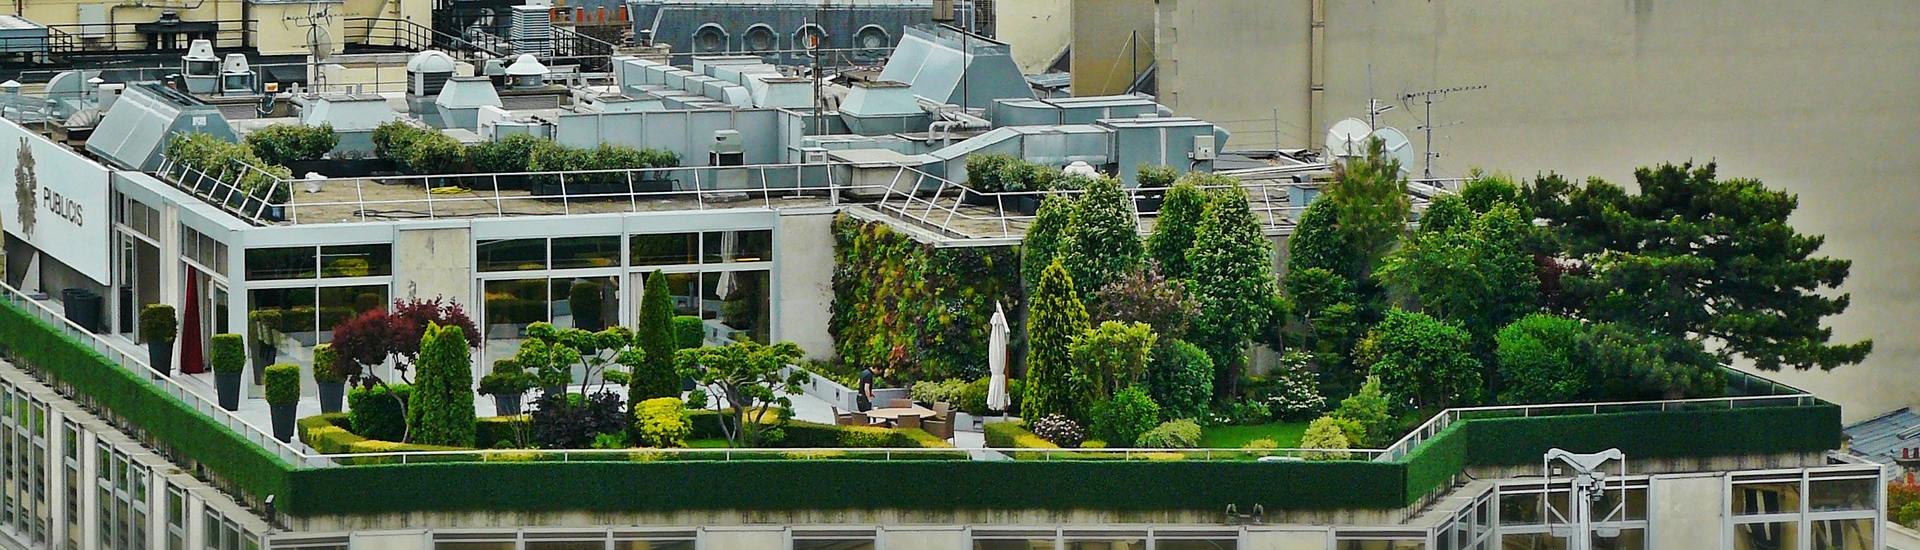 Ein grüner naturnaher Dachgarten